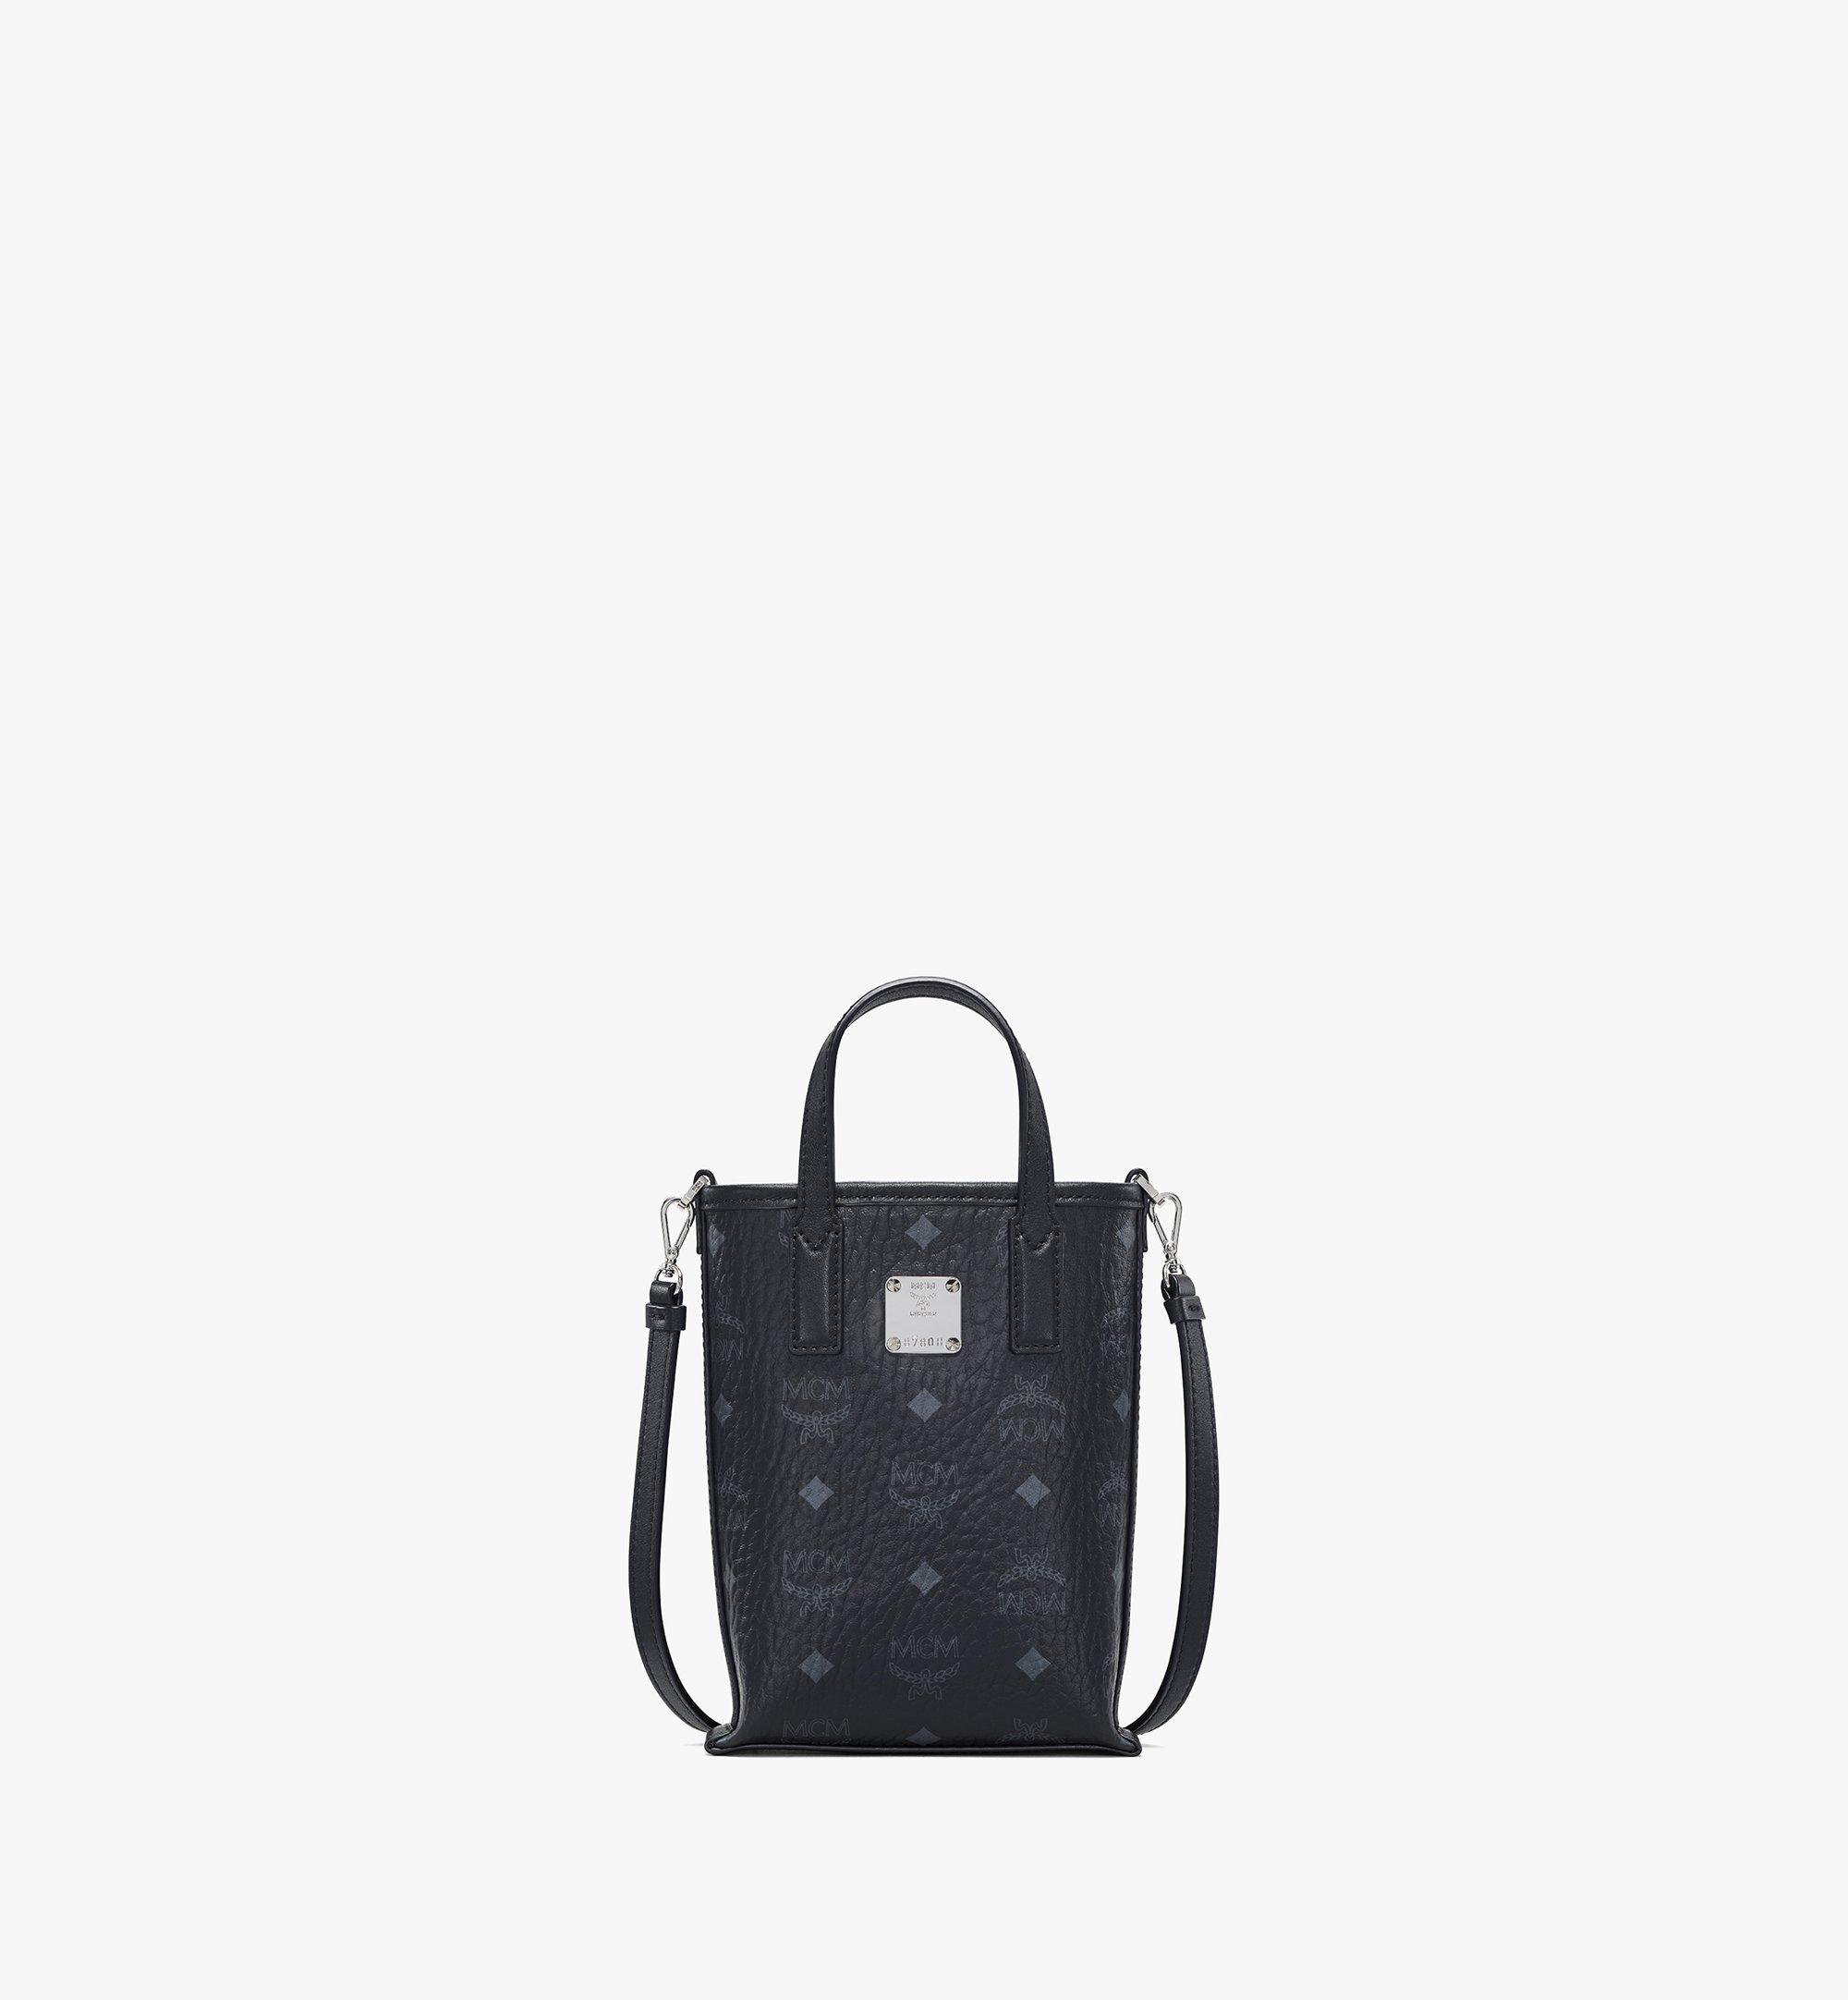 Designer Leather Crossbody Bags For Women